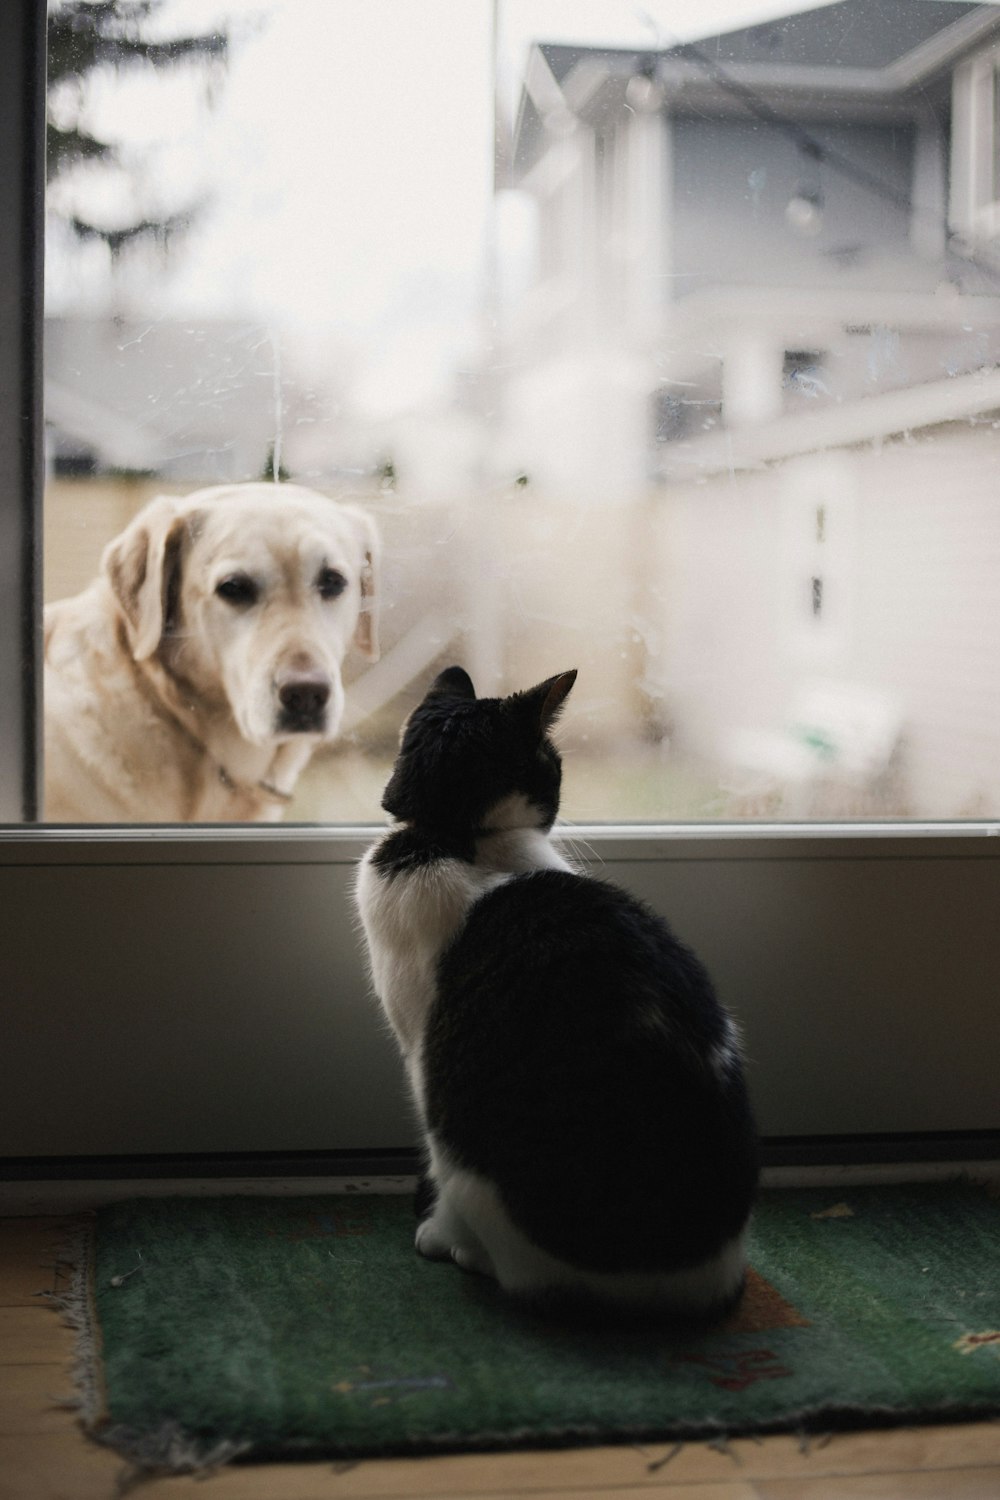 schwarz-weiße Katze beobachtet erwachsenen gelben Labrador Retriever am Fenster